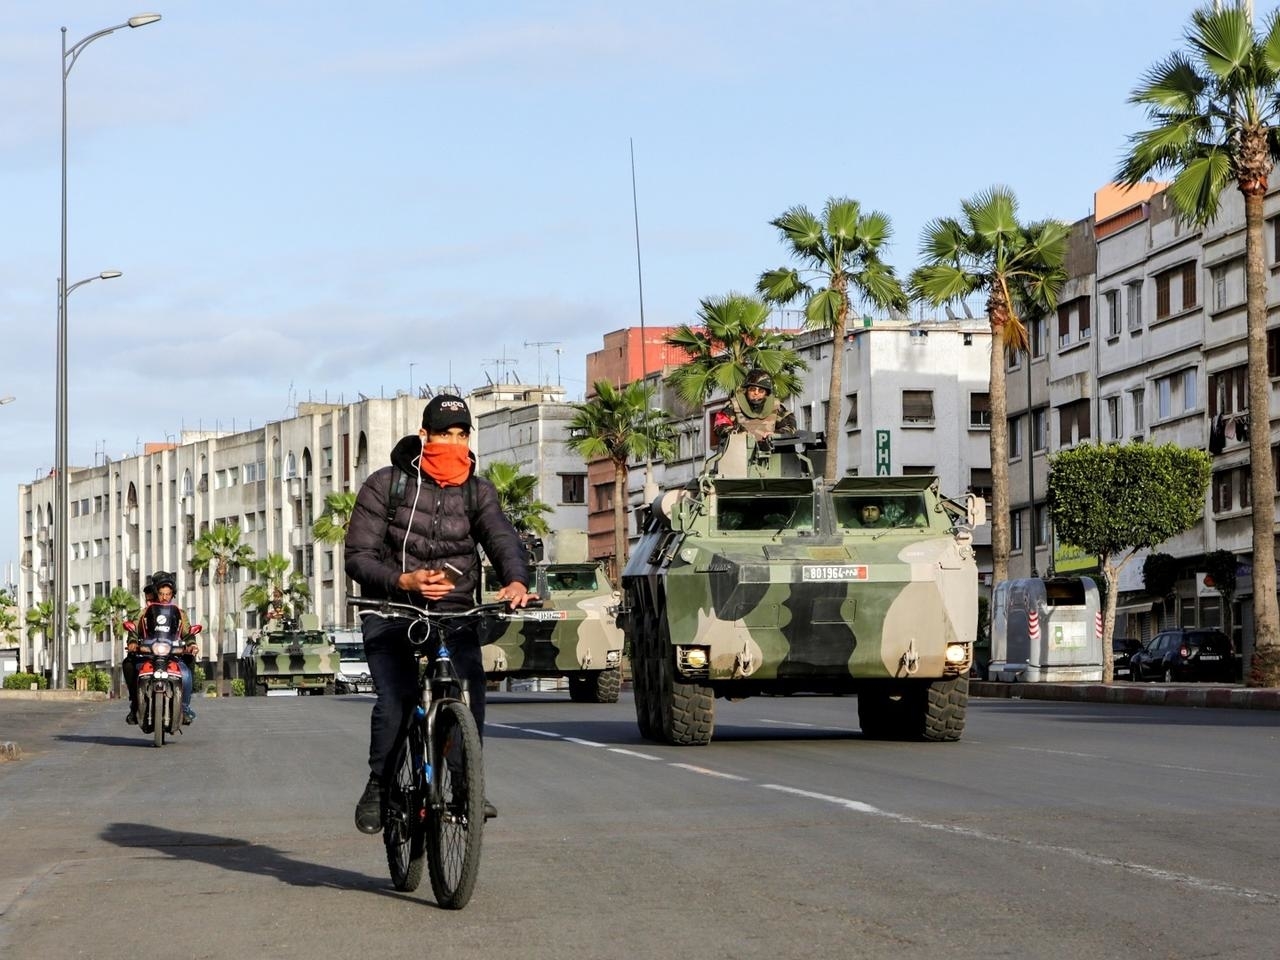 قوات الجيش تنتشر في شوارع طنجة لـ"محاصرة" كورونا